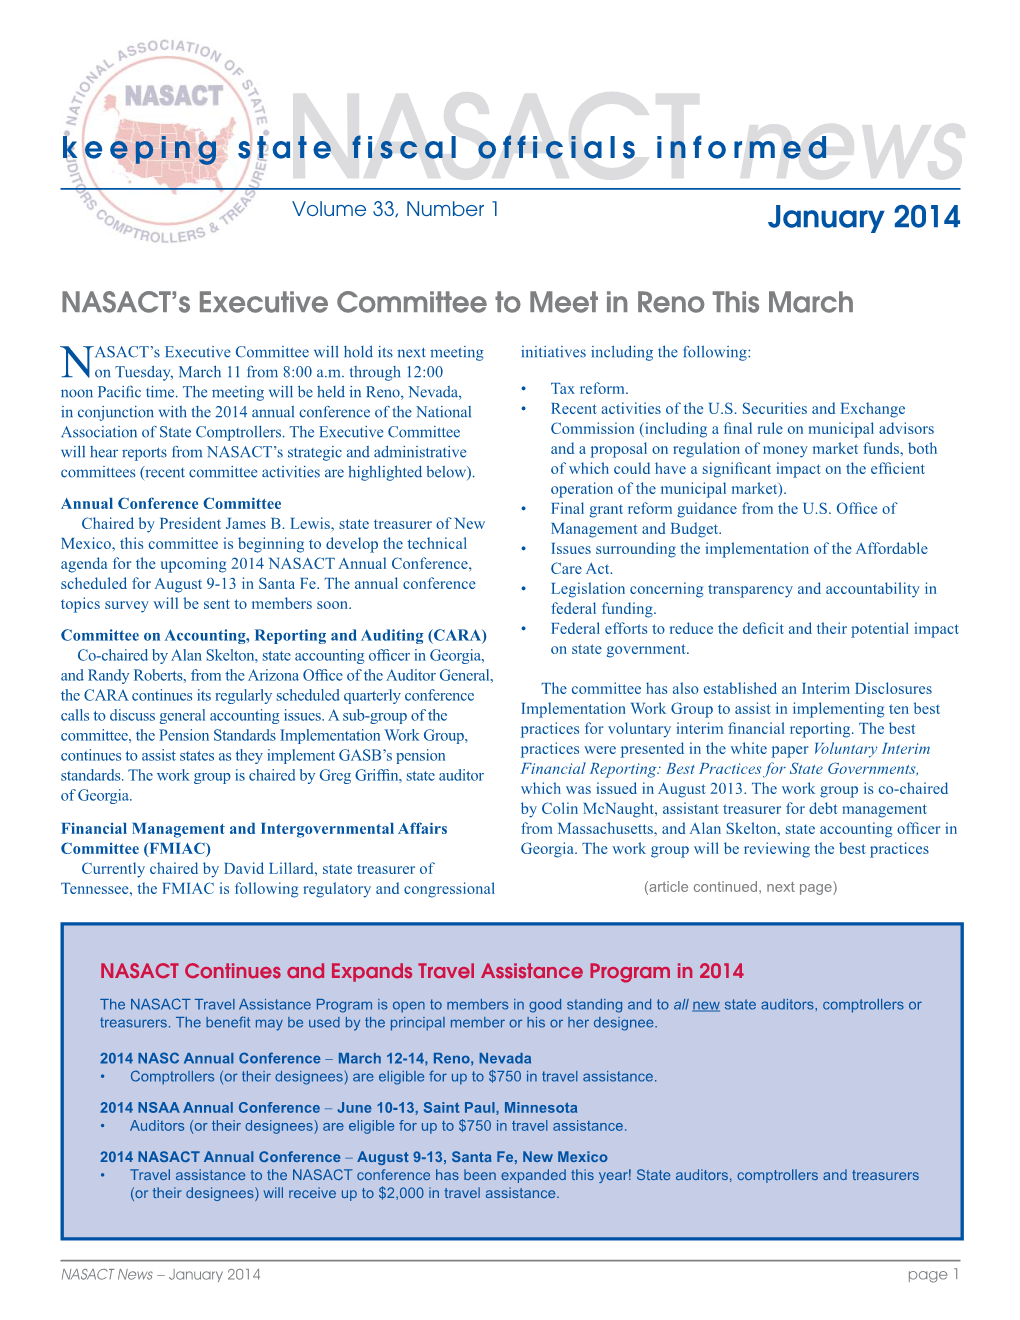 NASACT News, January 2014